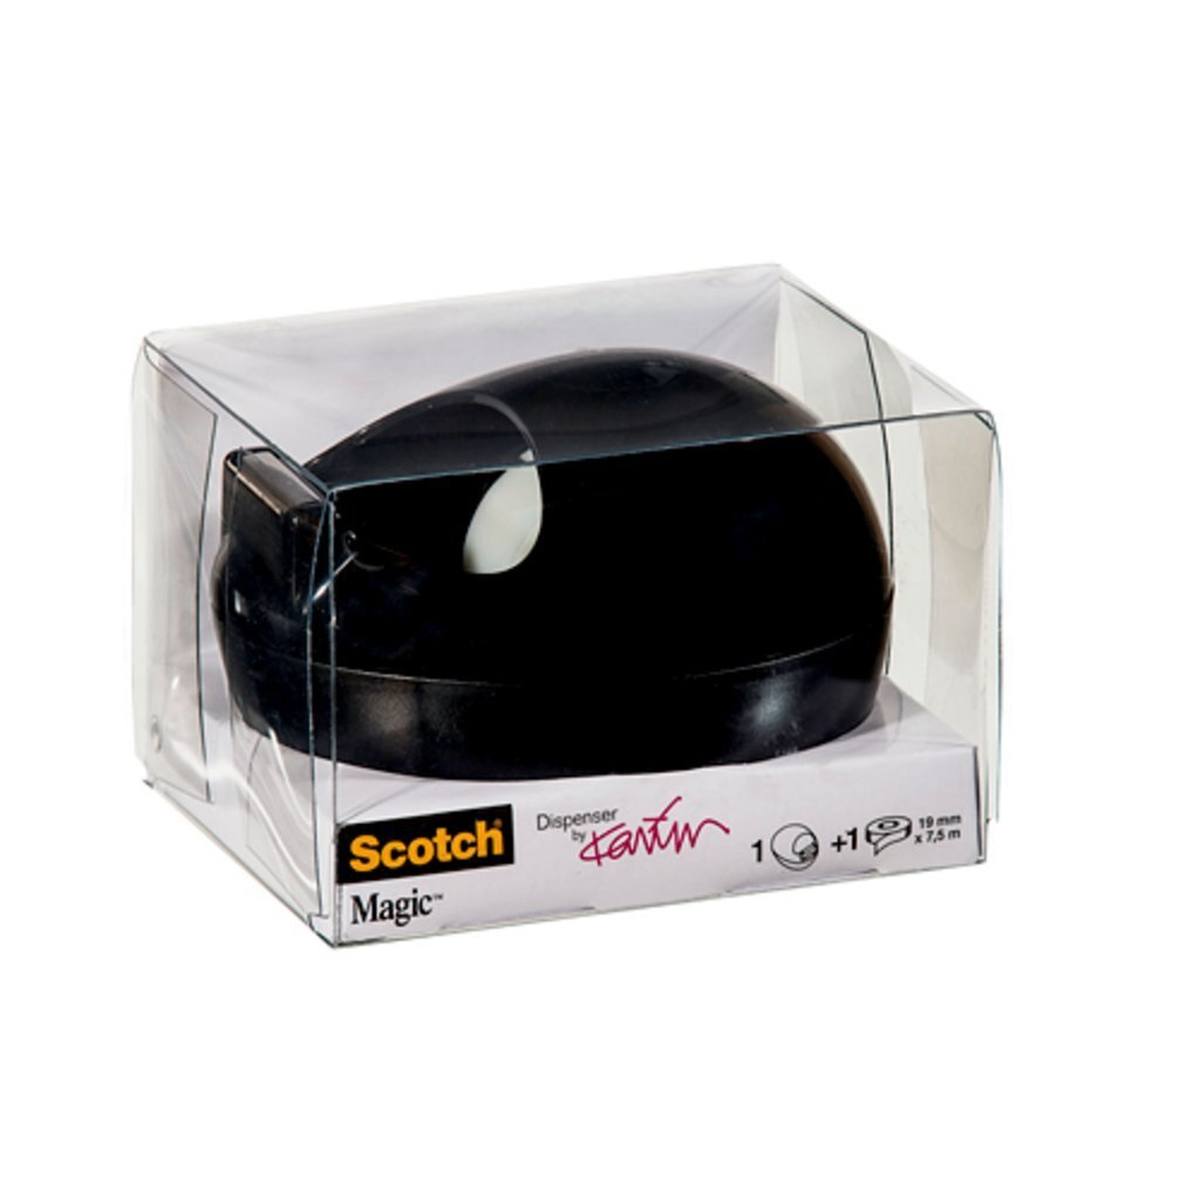 3M Dispensador Scotch de Karim Rashid negro + 1 rollo de cinta adhesiva Scotch Magic 19 mm x 7,5 m